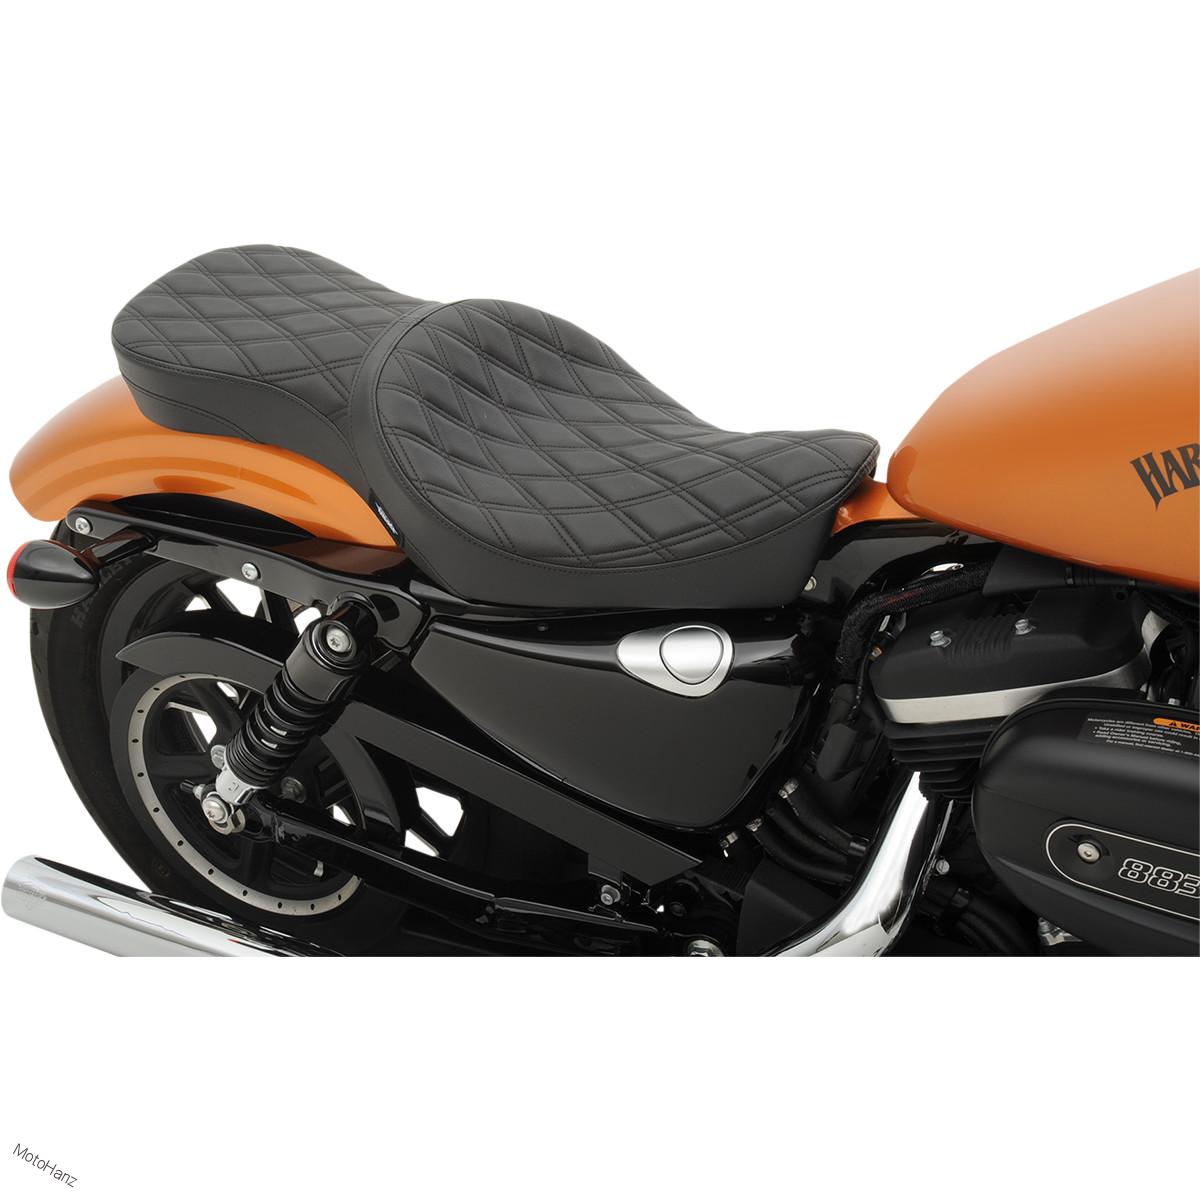 Snížené sedlo Low profile prošívané diamond Harley Davidson Sportster XL 04-20